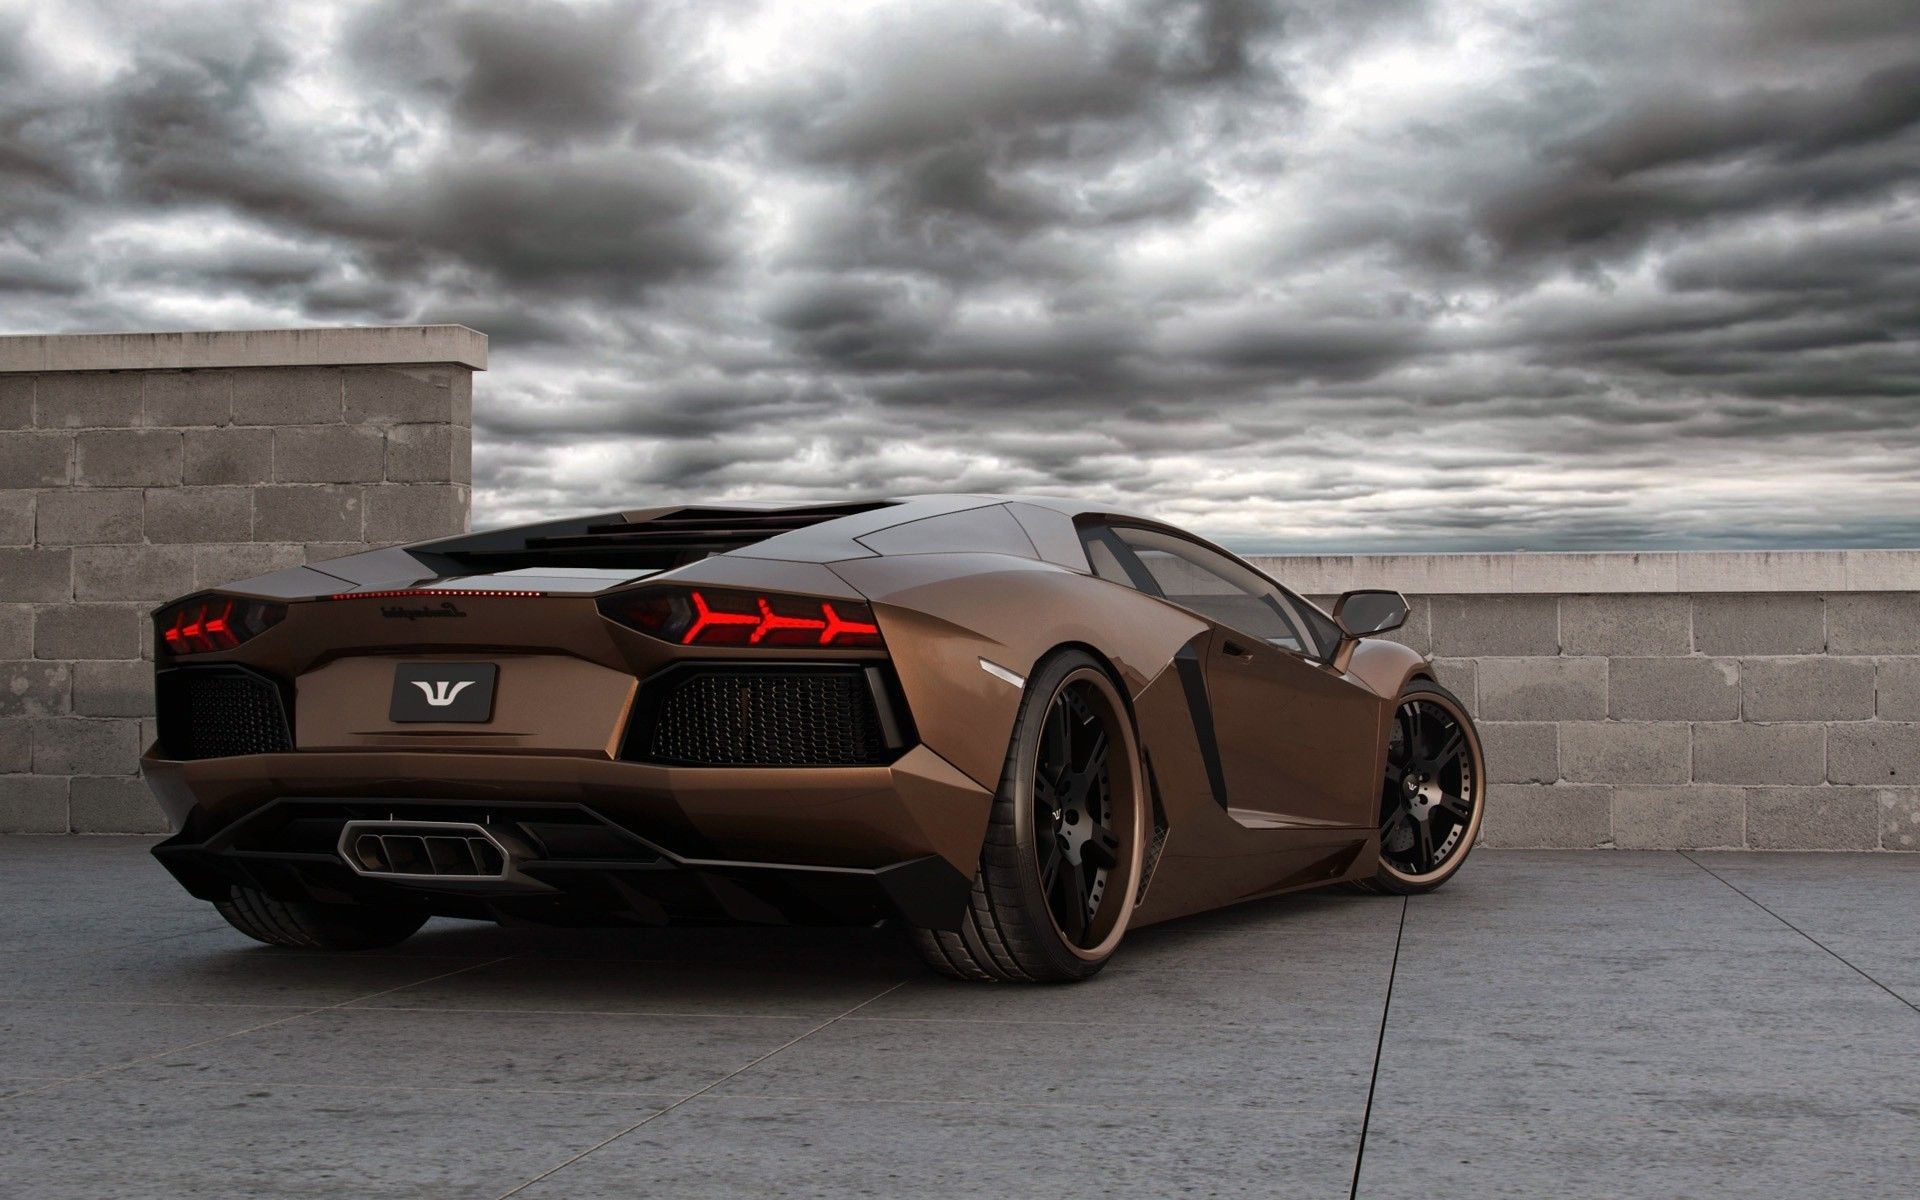 Lamborghini Cars Wallpapers | Free Download HD Latest Motors Images